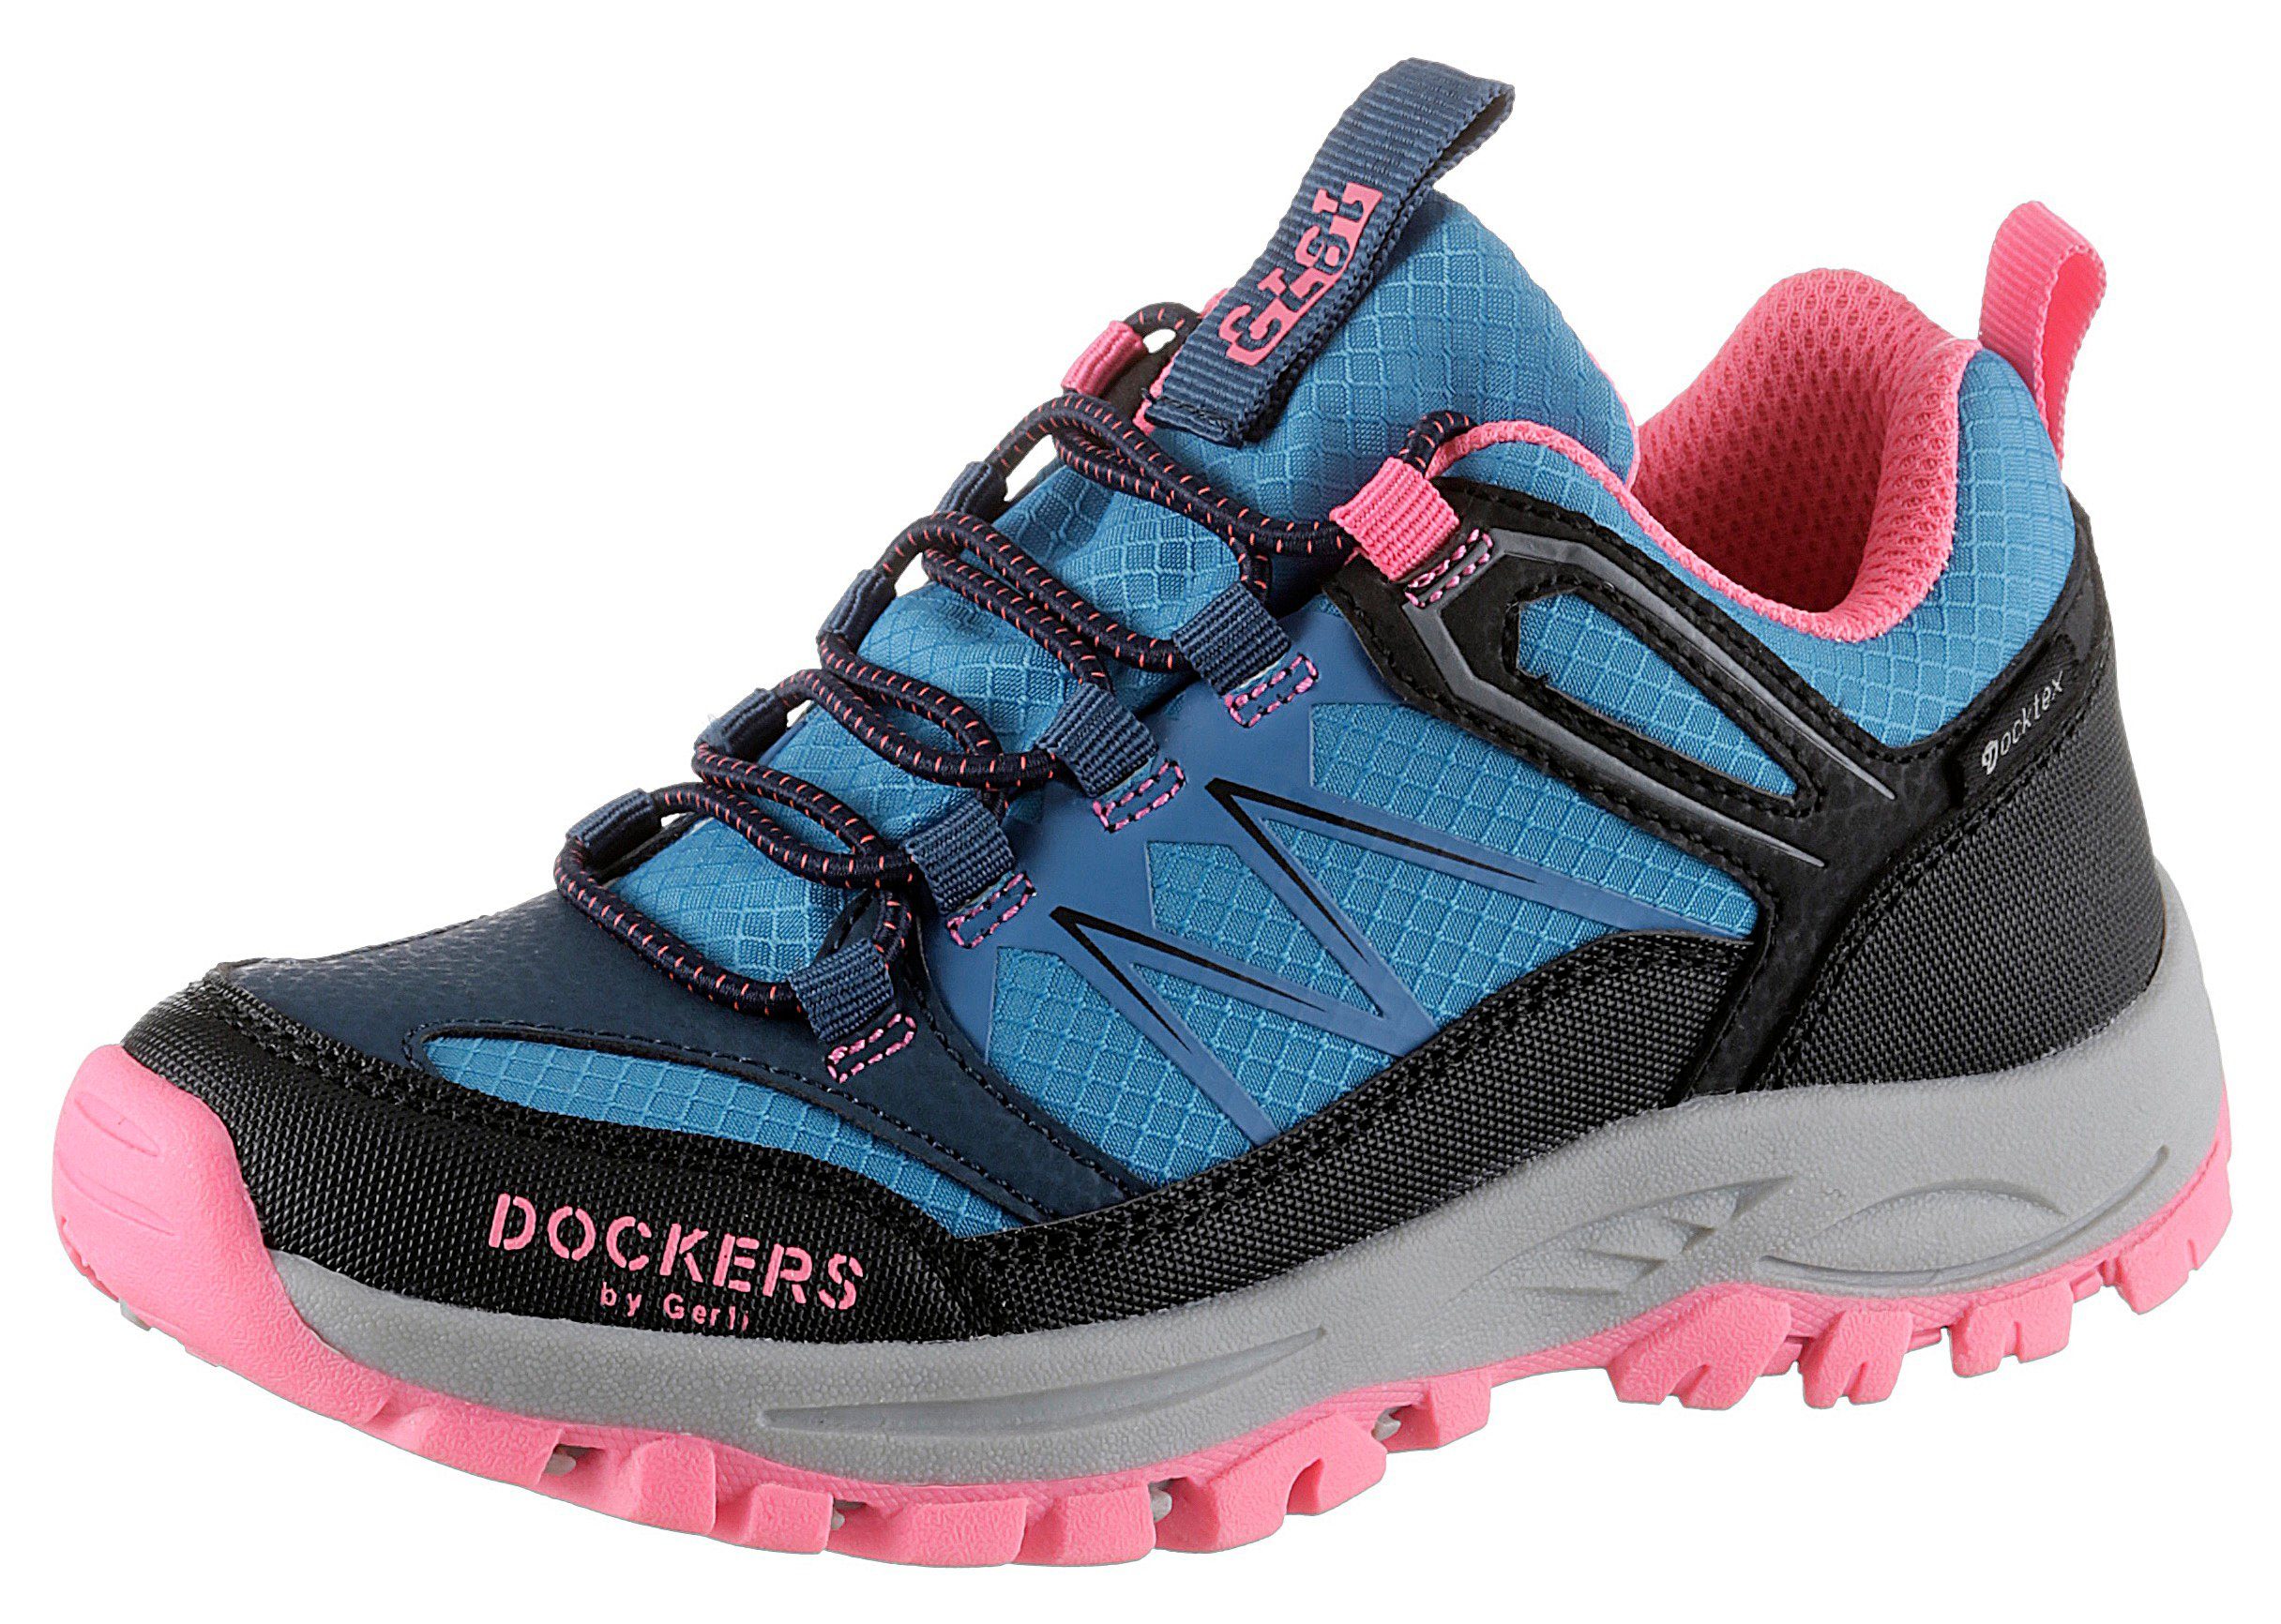 mit Slip-On blau-schwarz-pink Gerli Schnellverschluss Dockers by Sneaker